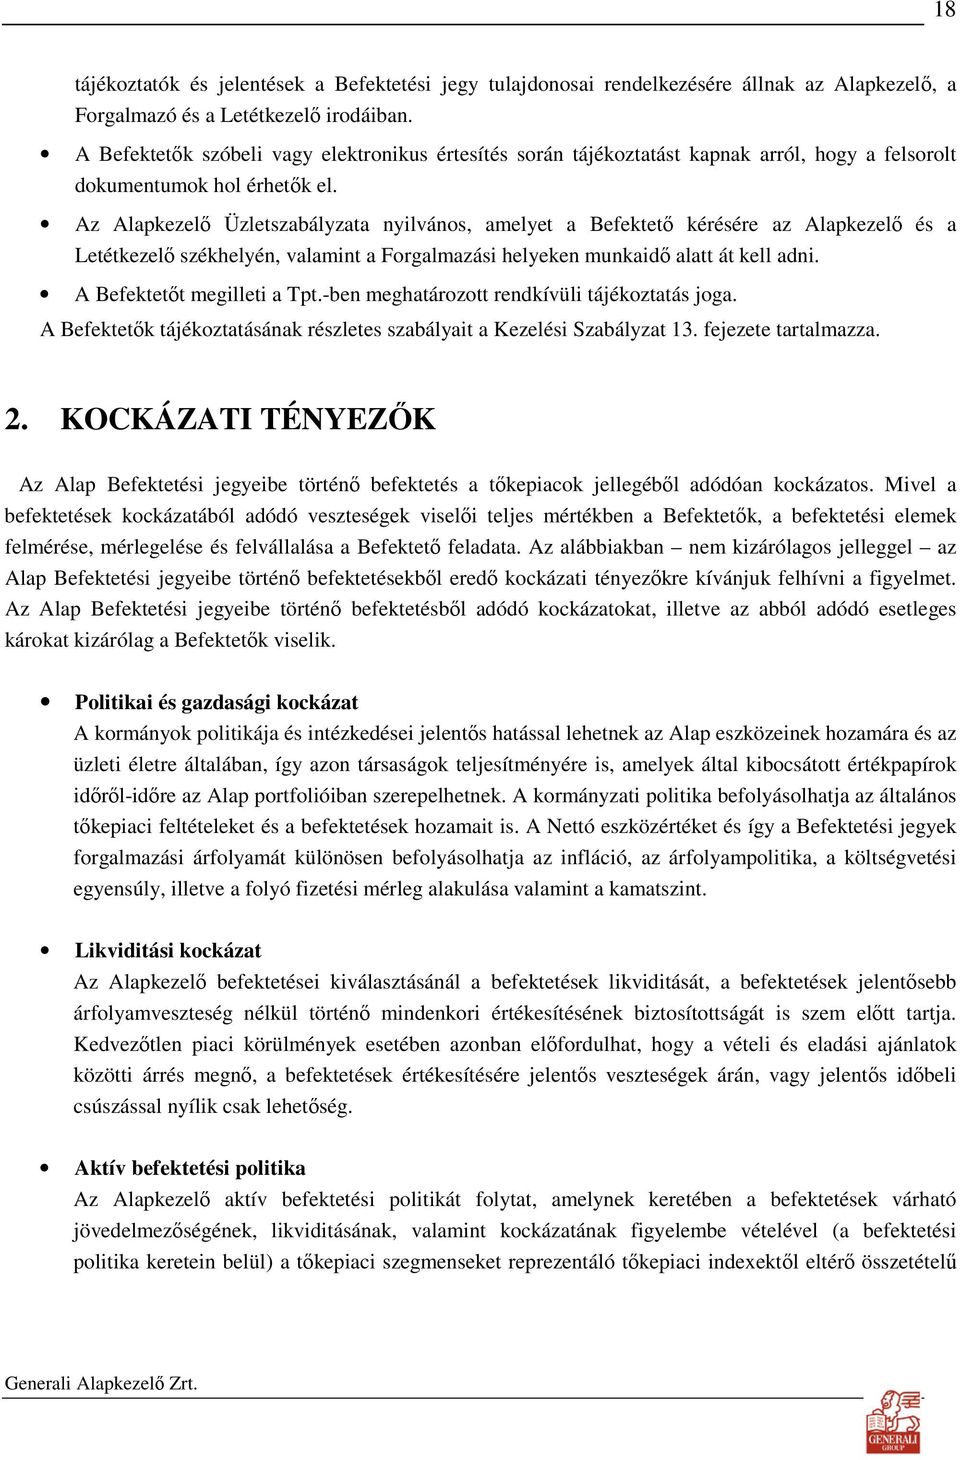 Az Alapkezelı Üzletszabályzata nyilvános, amelyet a Befektetı kérésére az Alapkezelı és a Letétkezelı székhelyén, valamint a Forgalmazási helyeken munkaidı alatt át kell adni.